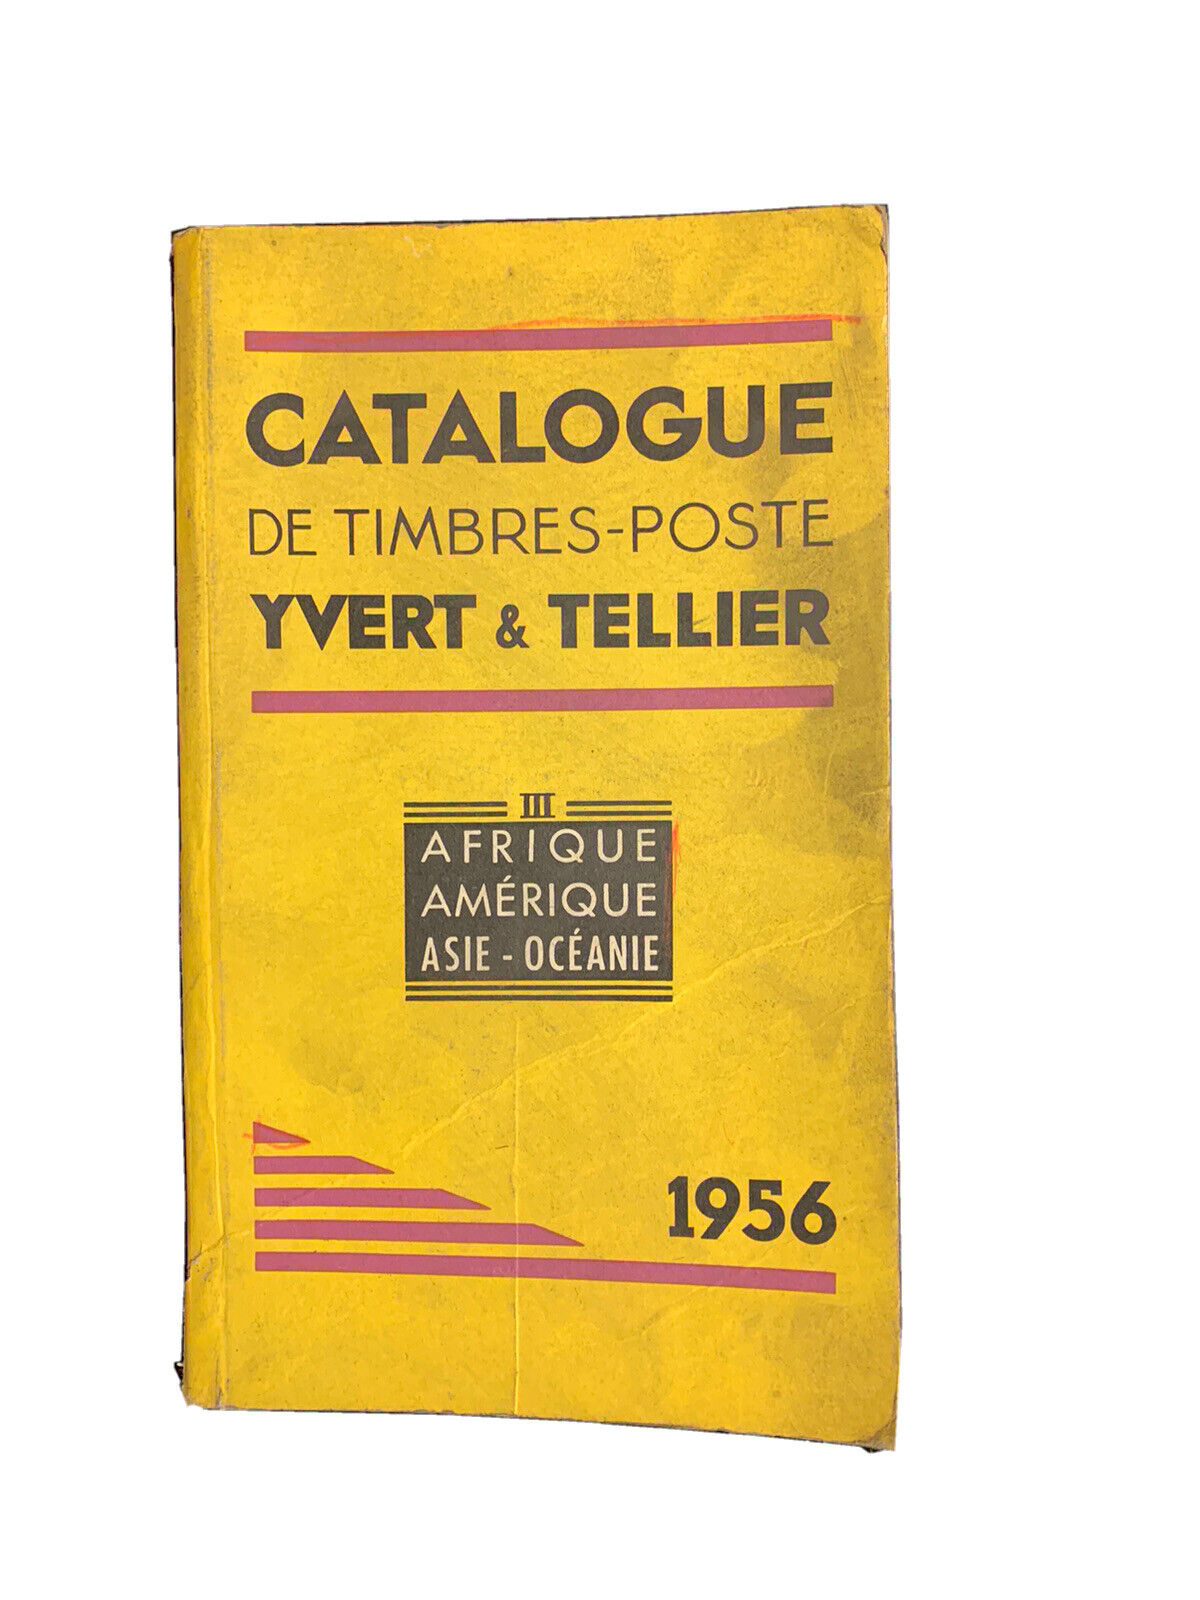 Catalogue De Timbres - Poste Vol. 3 Yvert & Tellier